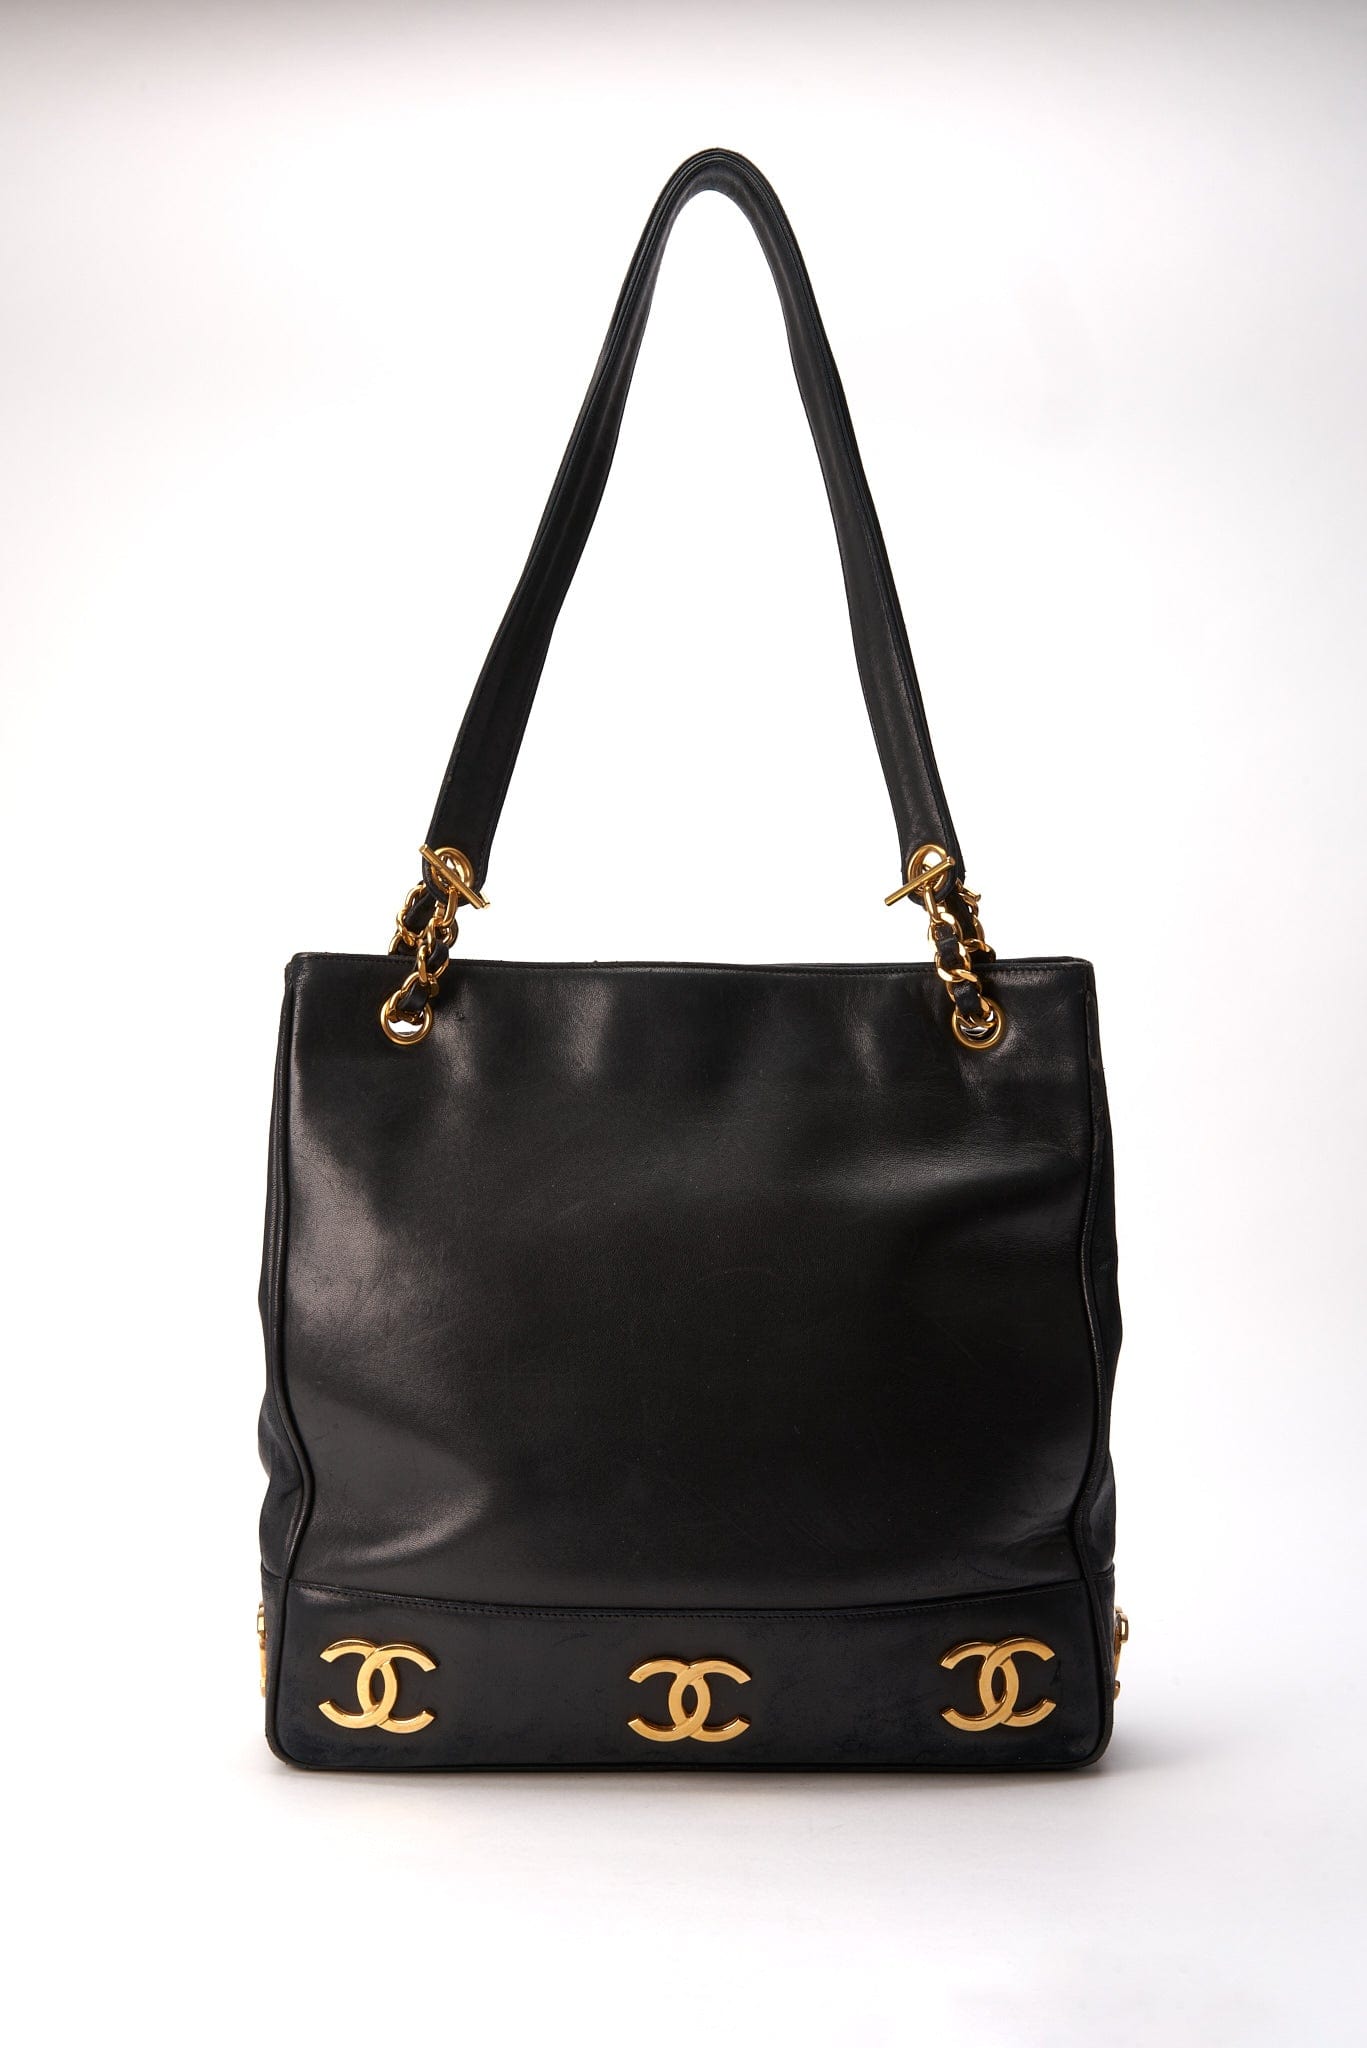 CHANEL Vintage CC Quilted Leather Tassel Shopper Bag Black